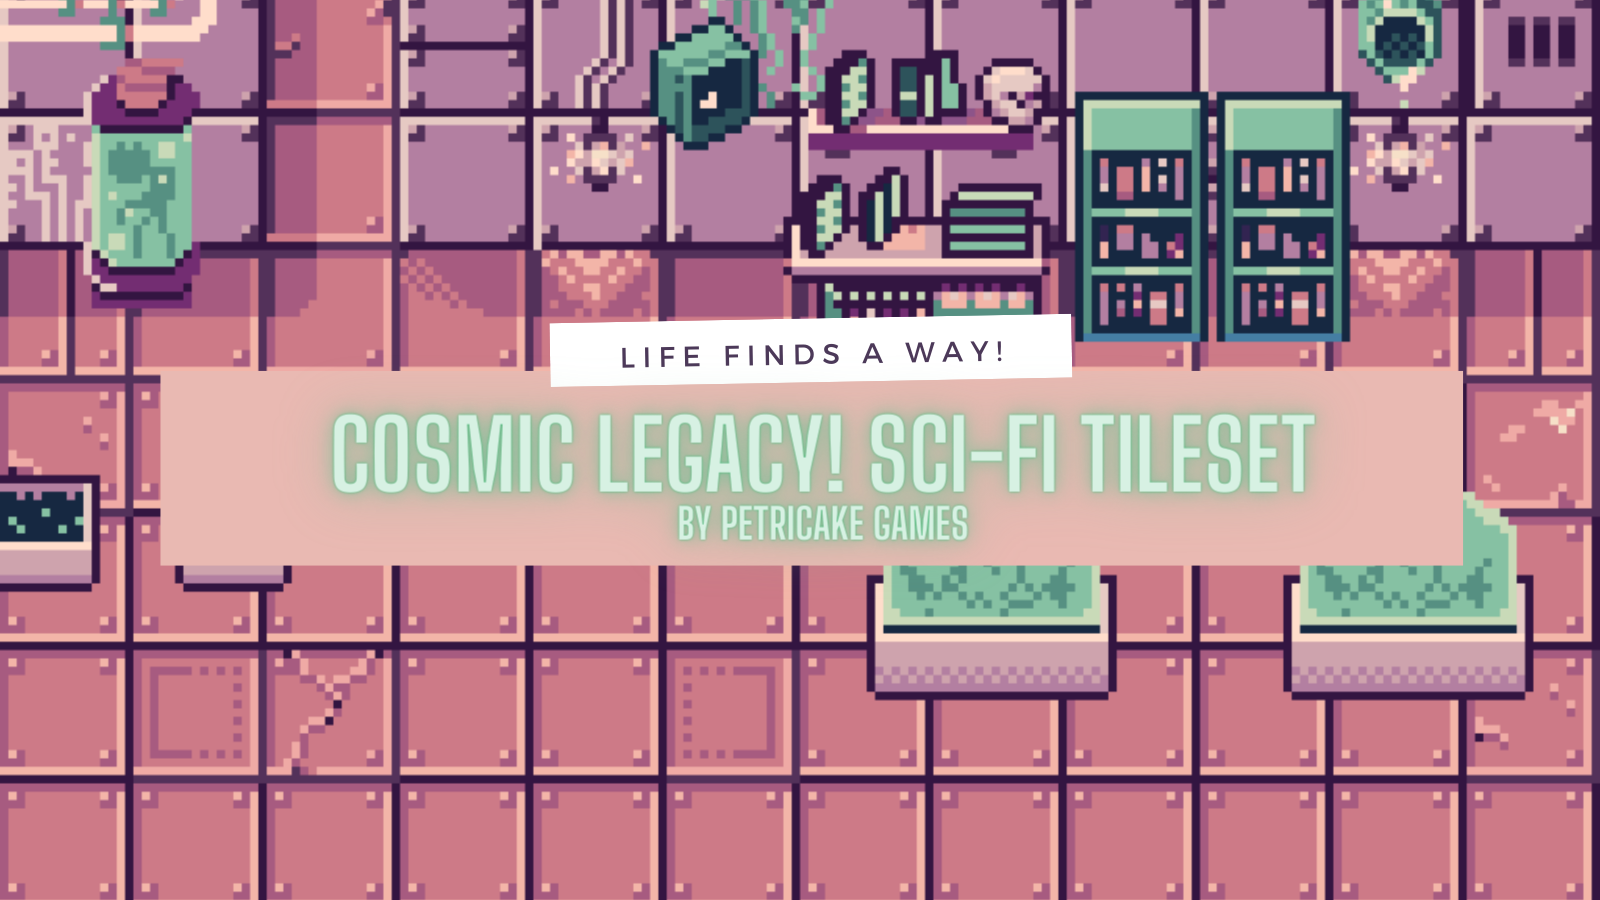 Cosmic Legacy! Sci-Fi Tileset